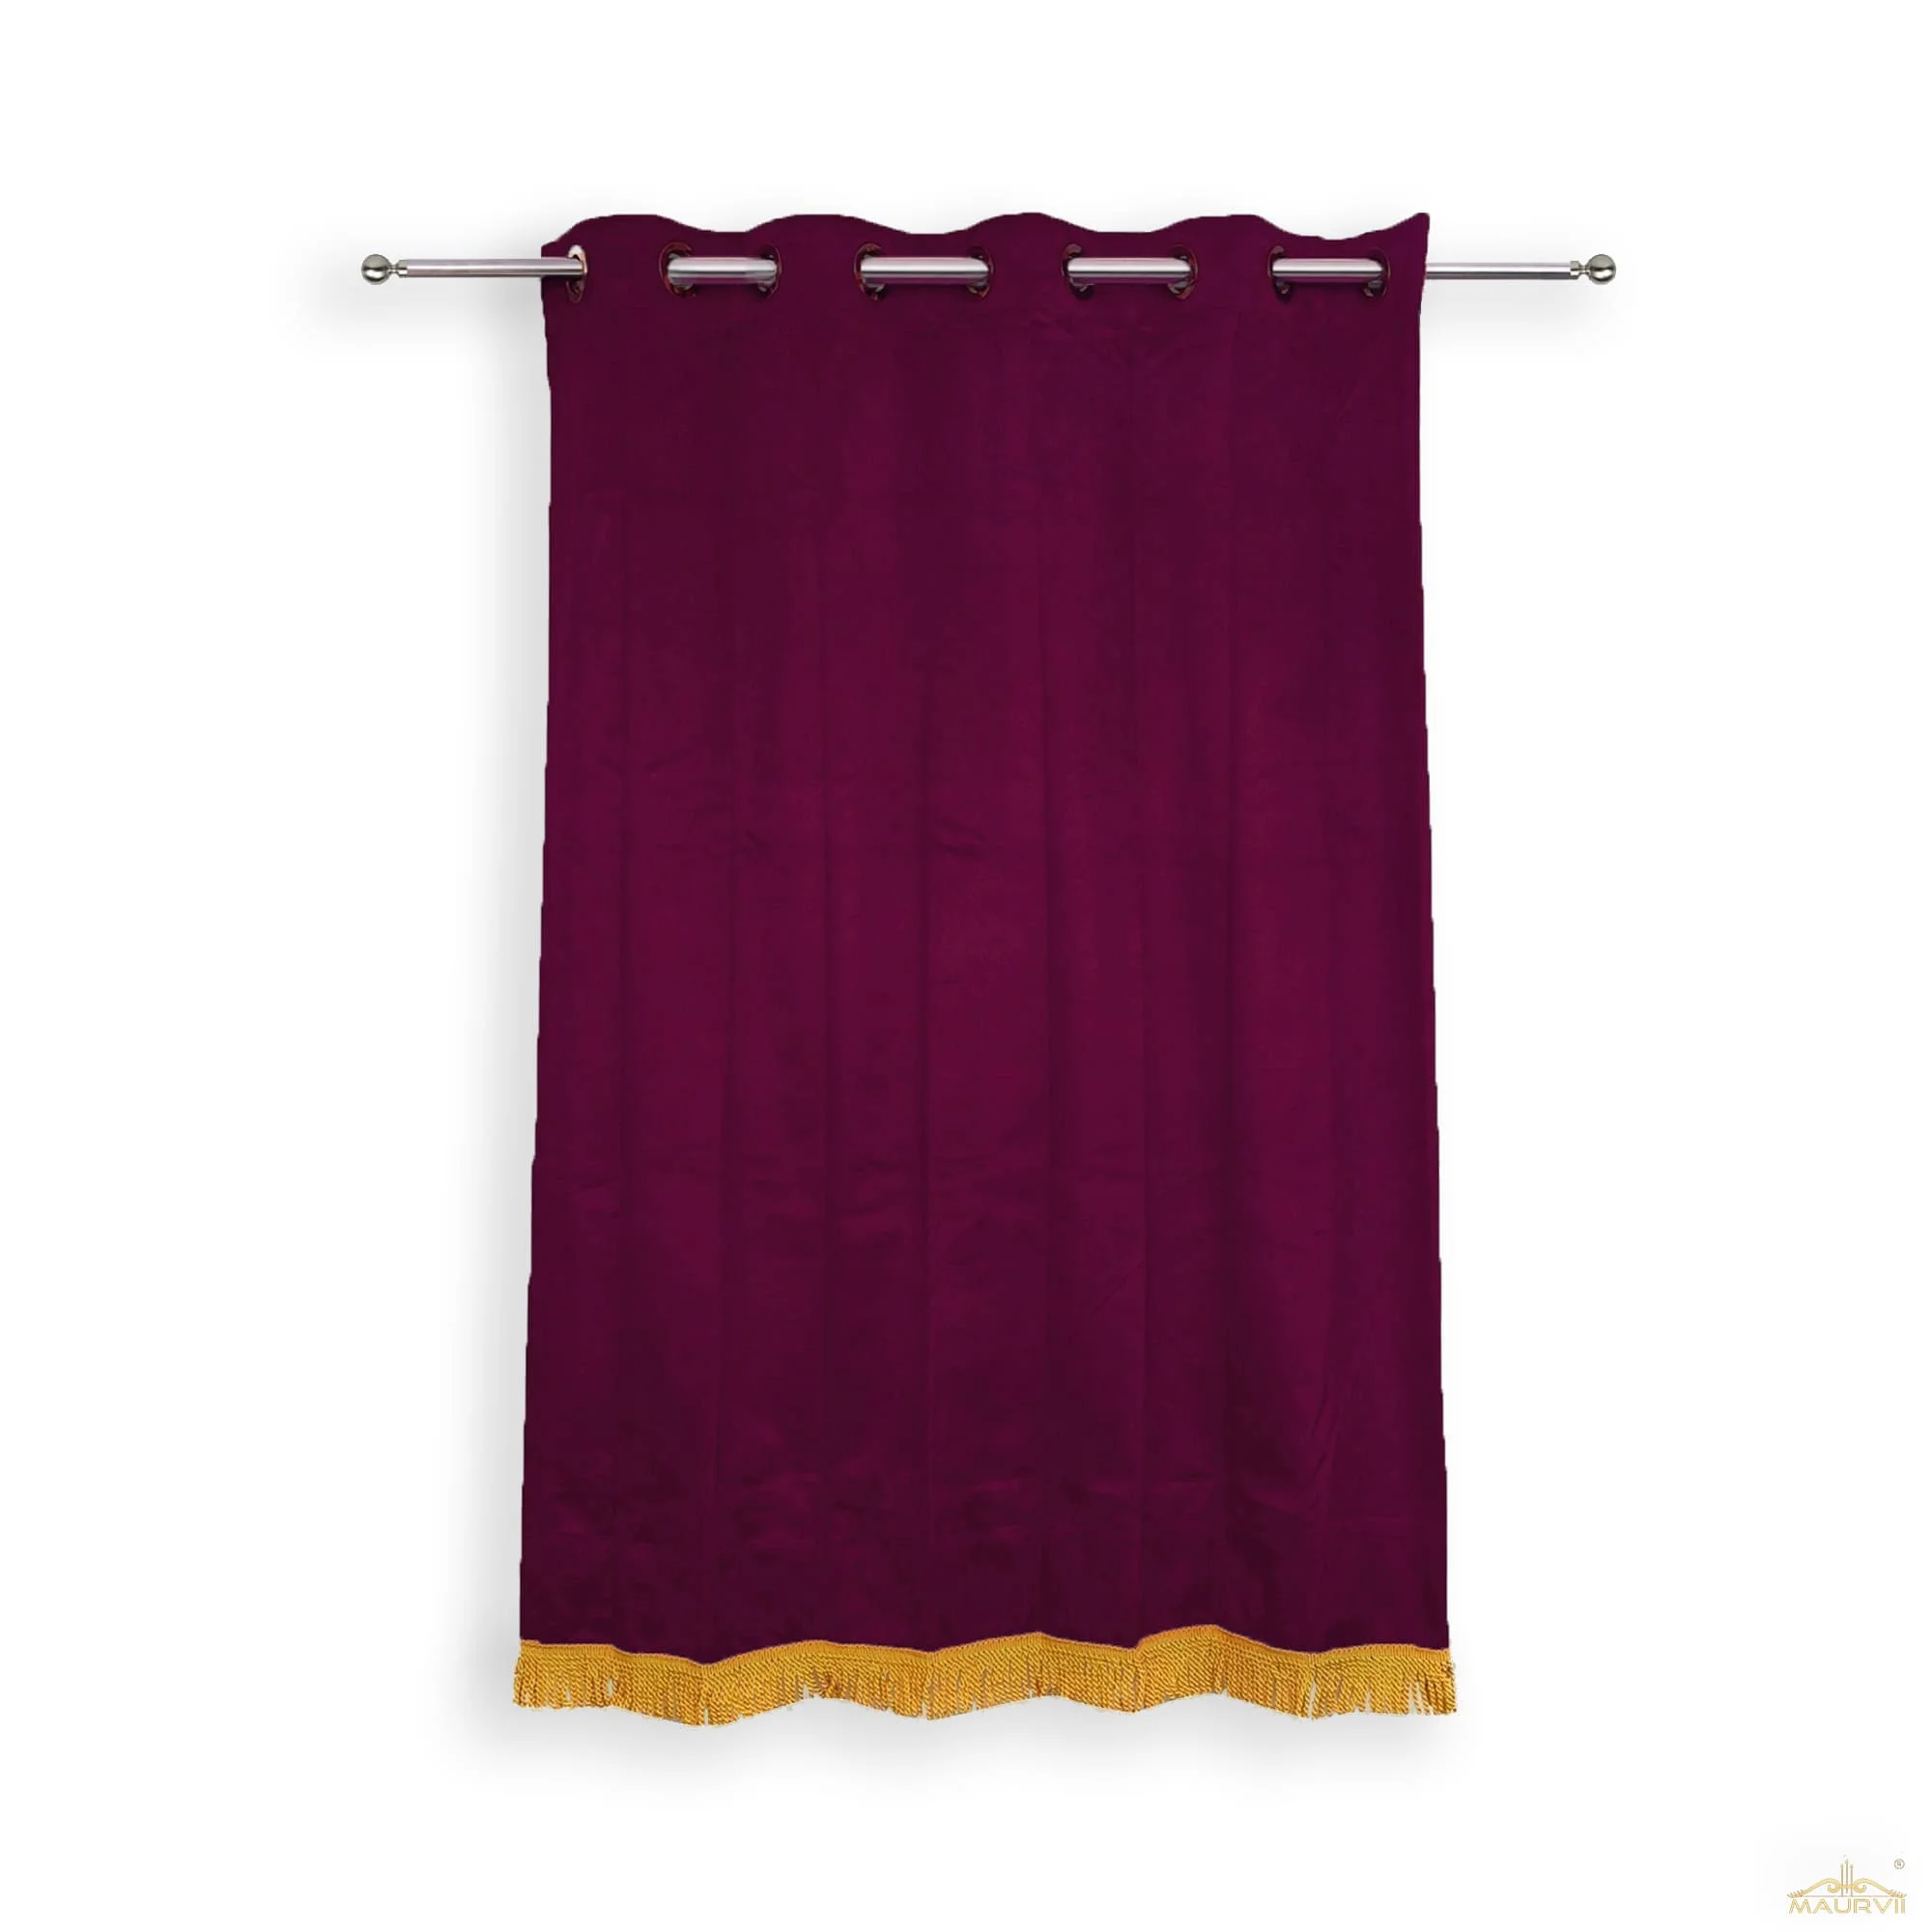 Burgundy velvet curtains with golden fringe